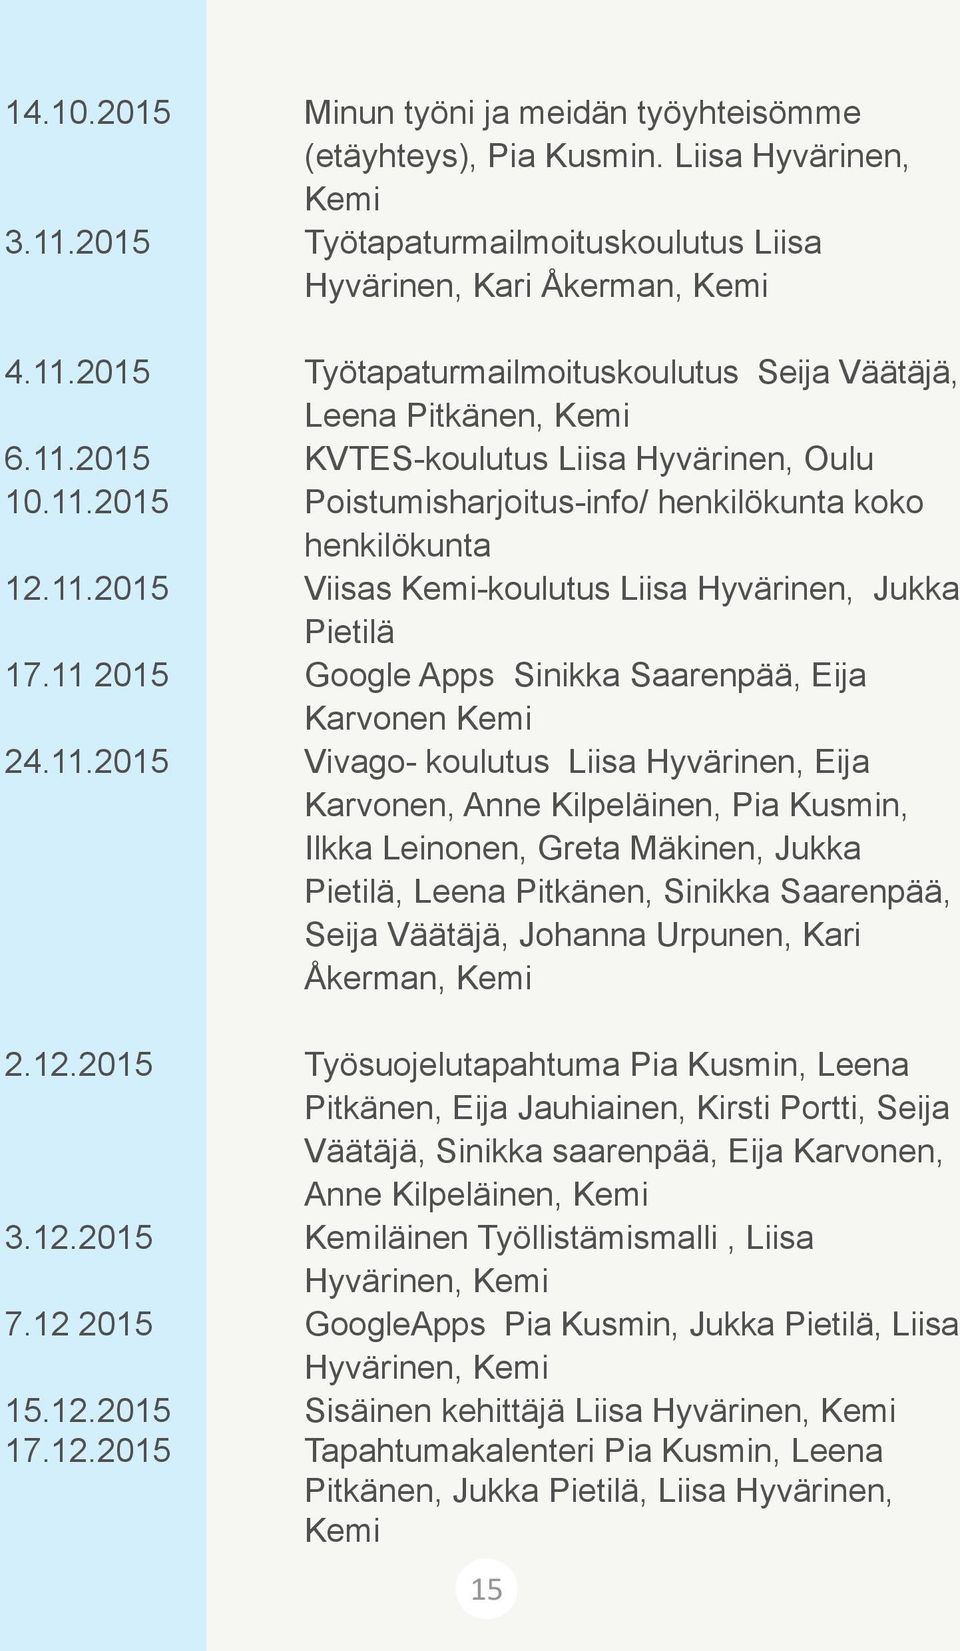 11 2015 Google Apps Sinikka Saarenpää, Eija Karvonen Kemi 24.11.2015 Vivago- koulutus Liisa Hyvärinen, Eija Karvonen, Anne Kilpeläinen, Pia Kusmin, Ilkka Leinonen, Greta Mäkinen, Jukka Pietilä, Leena